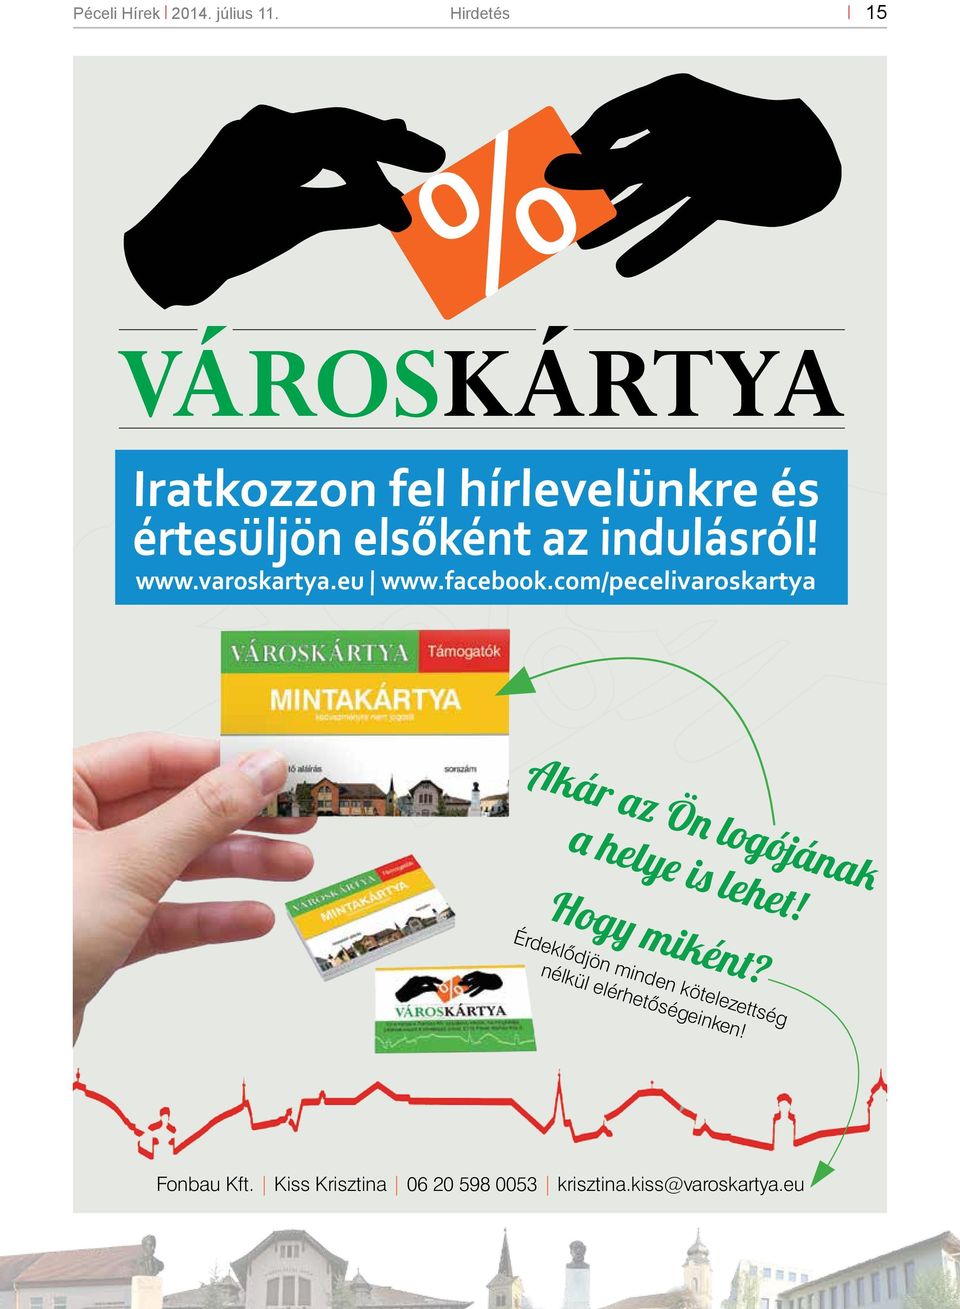 www.varoskartya.eu www.facebook.com/pecelivaroskartya %Akár az Ön logójának a helye is lehet!